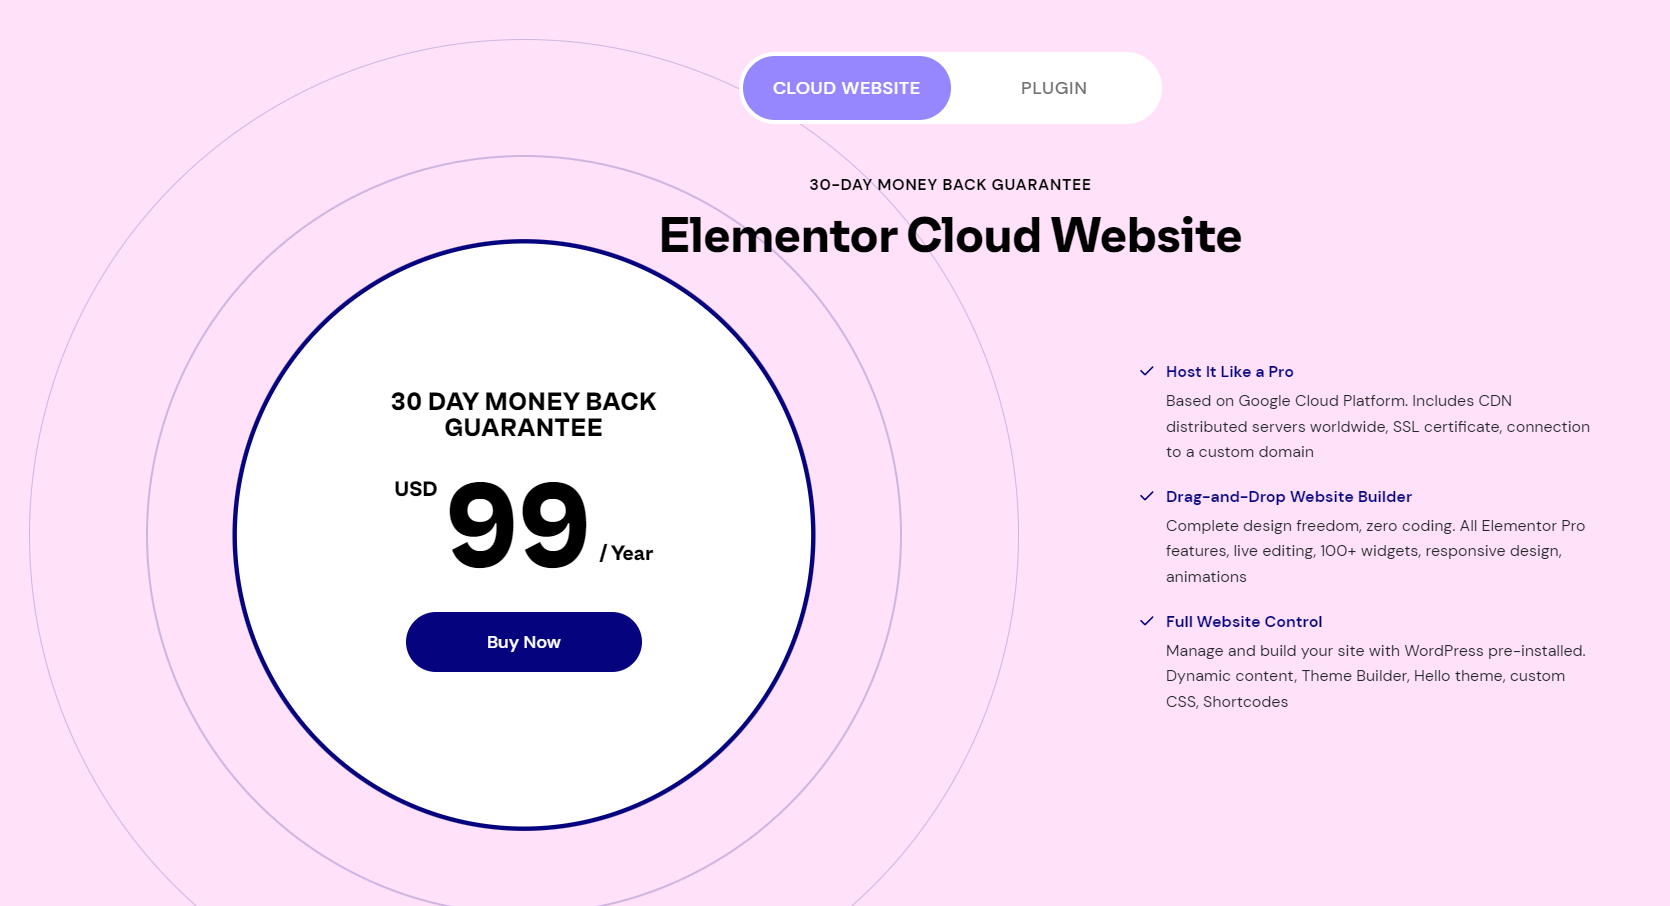 엘리멘터 프로와 호스팅이 제공되는 Elementor Cloud Website 상품